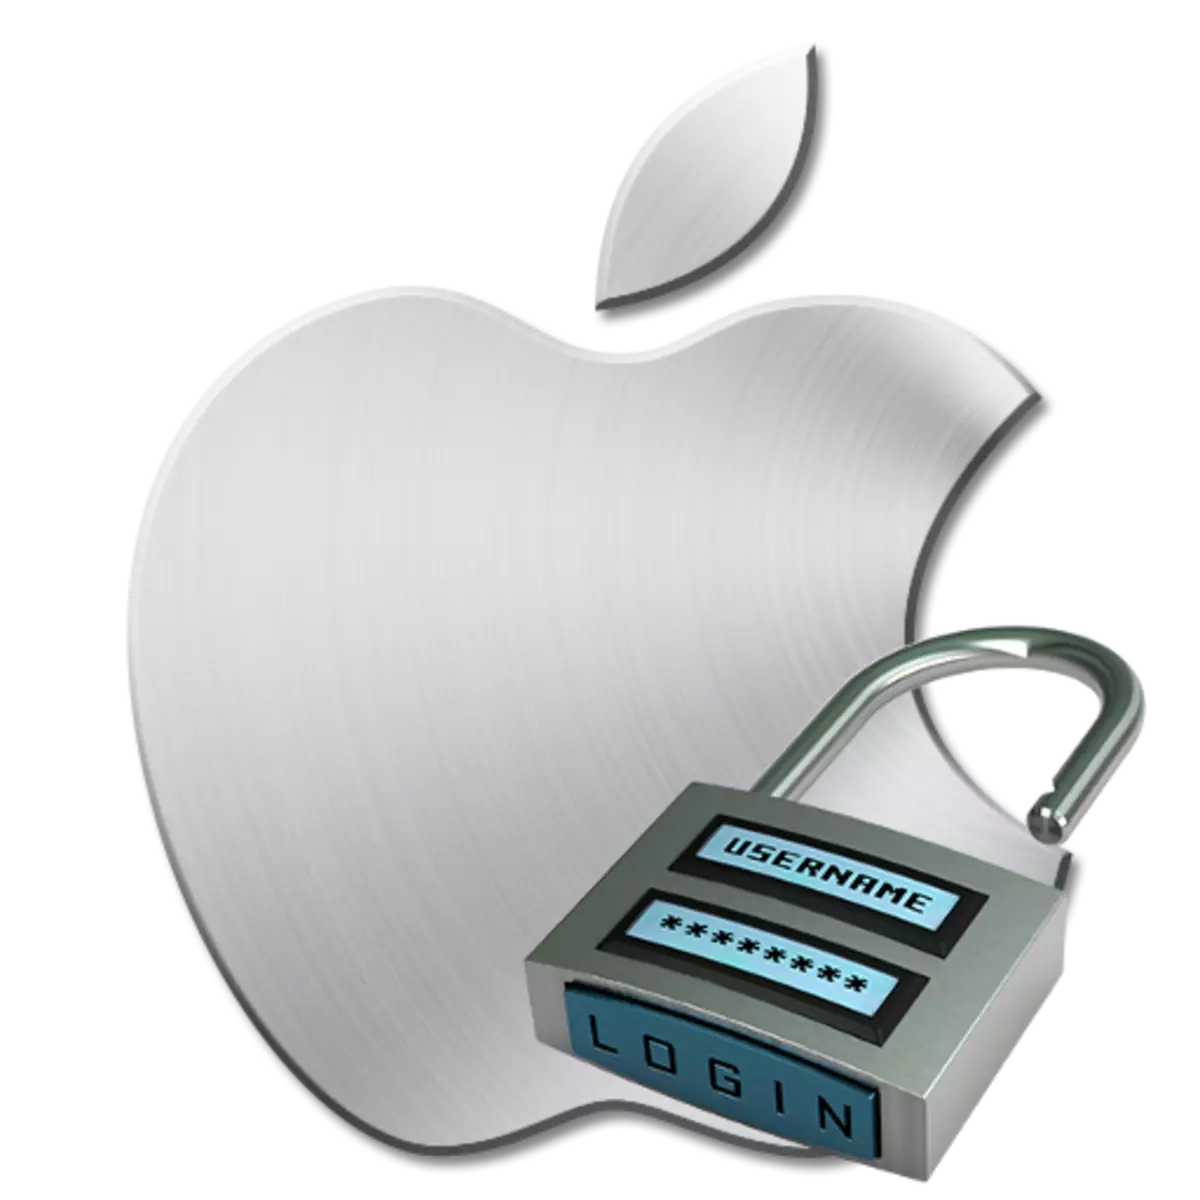 Як поміняти пароль Apple ID